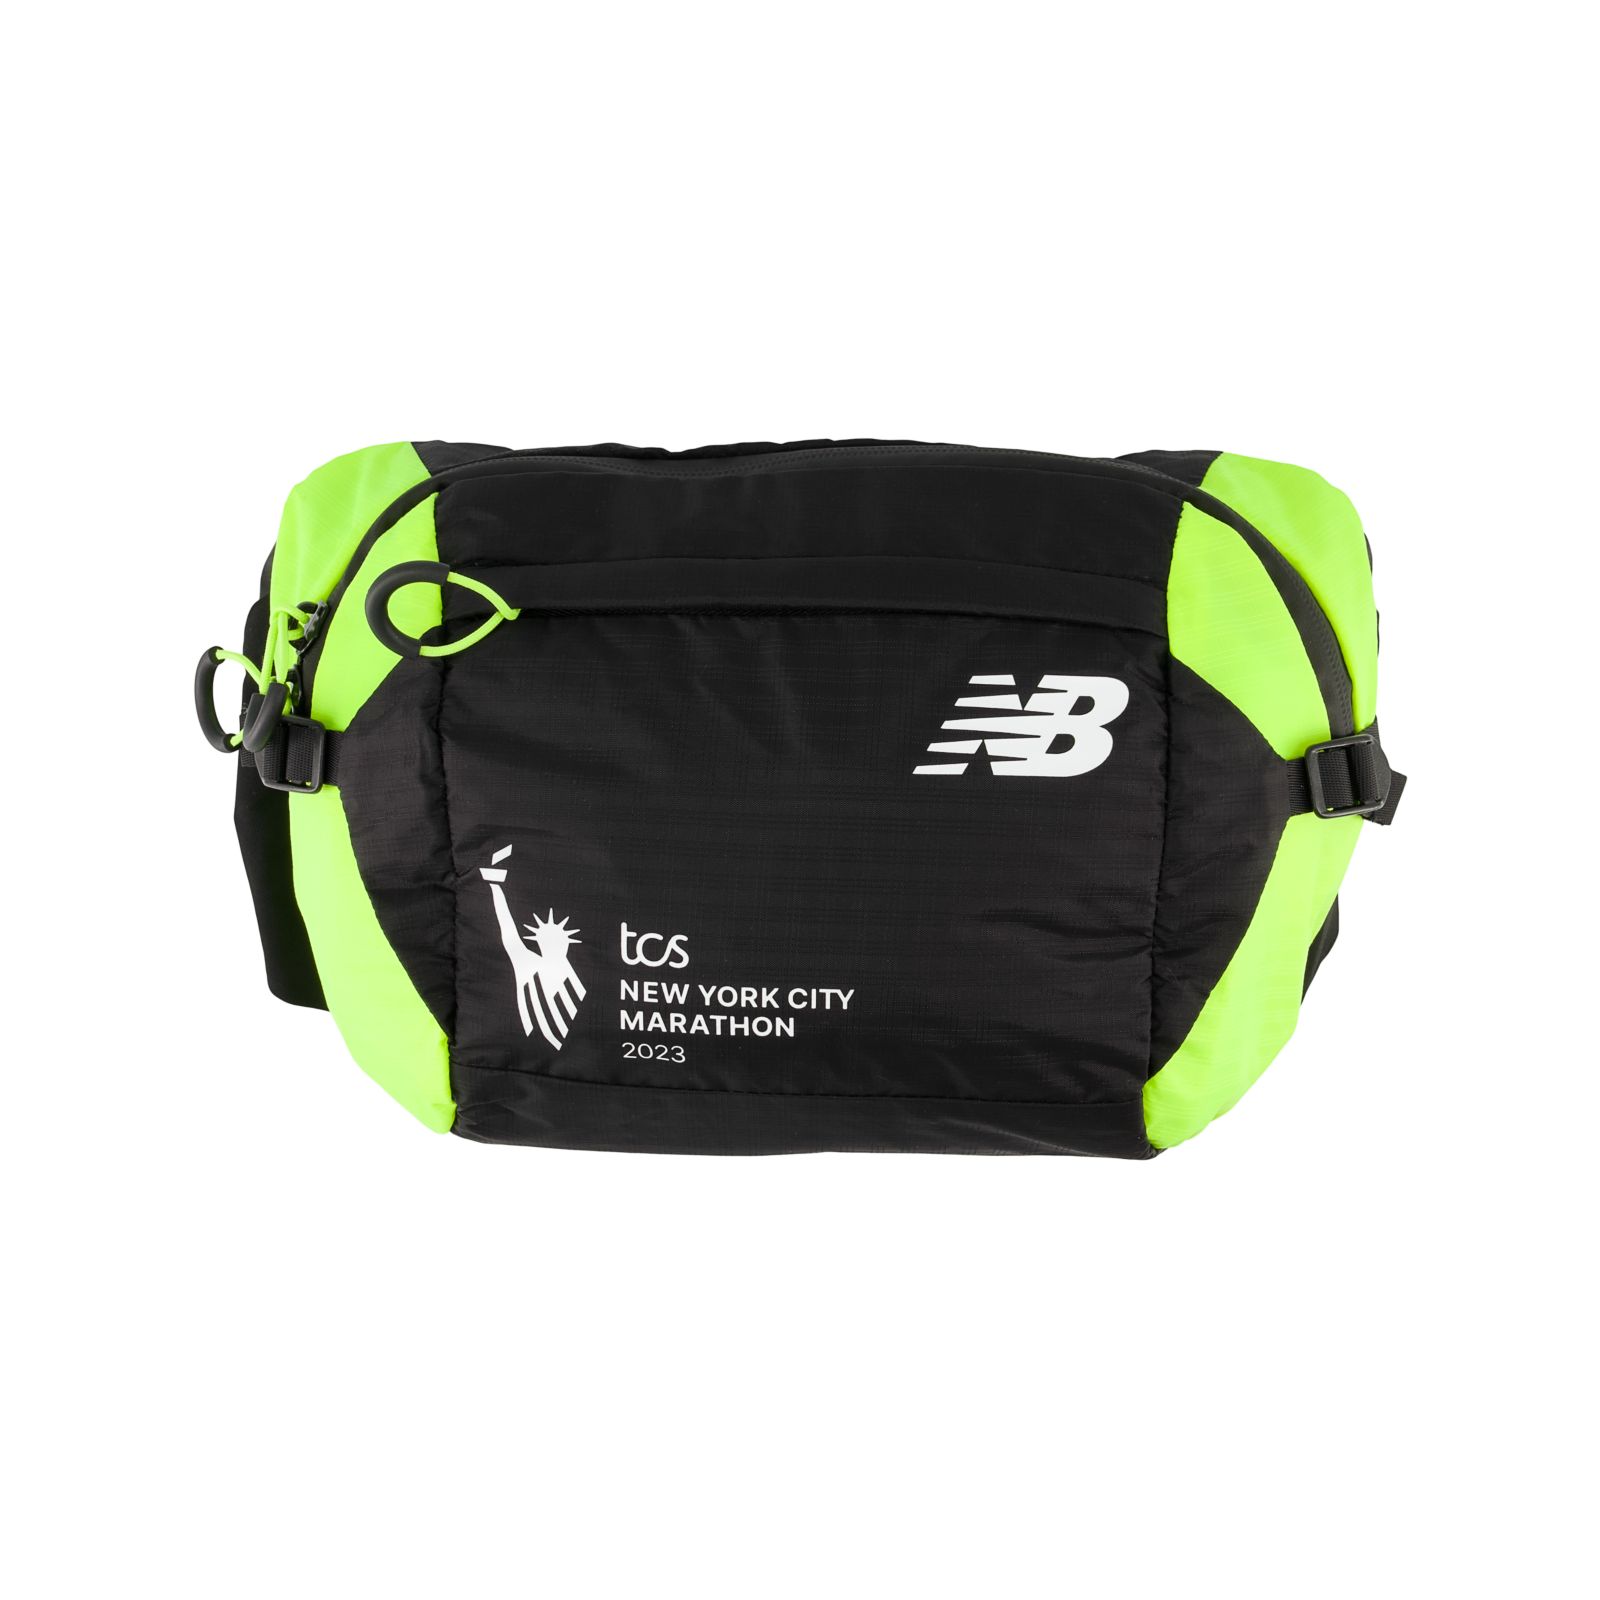 New Balance Unisex Athletics Waist Bag - Black/White (Size OSZ)